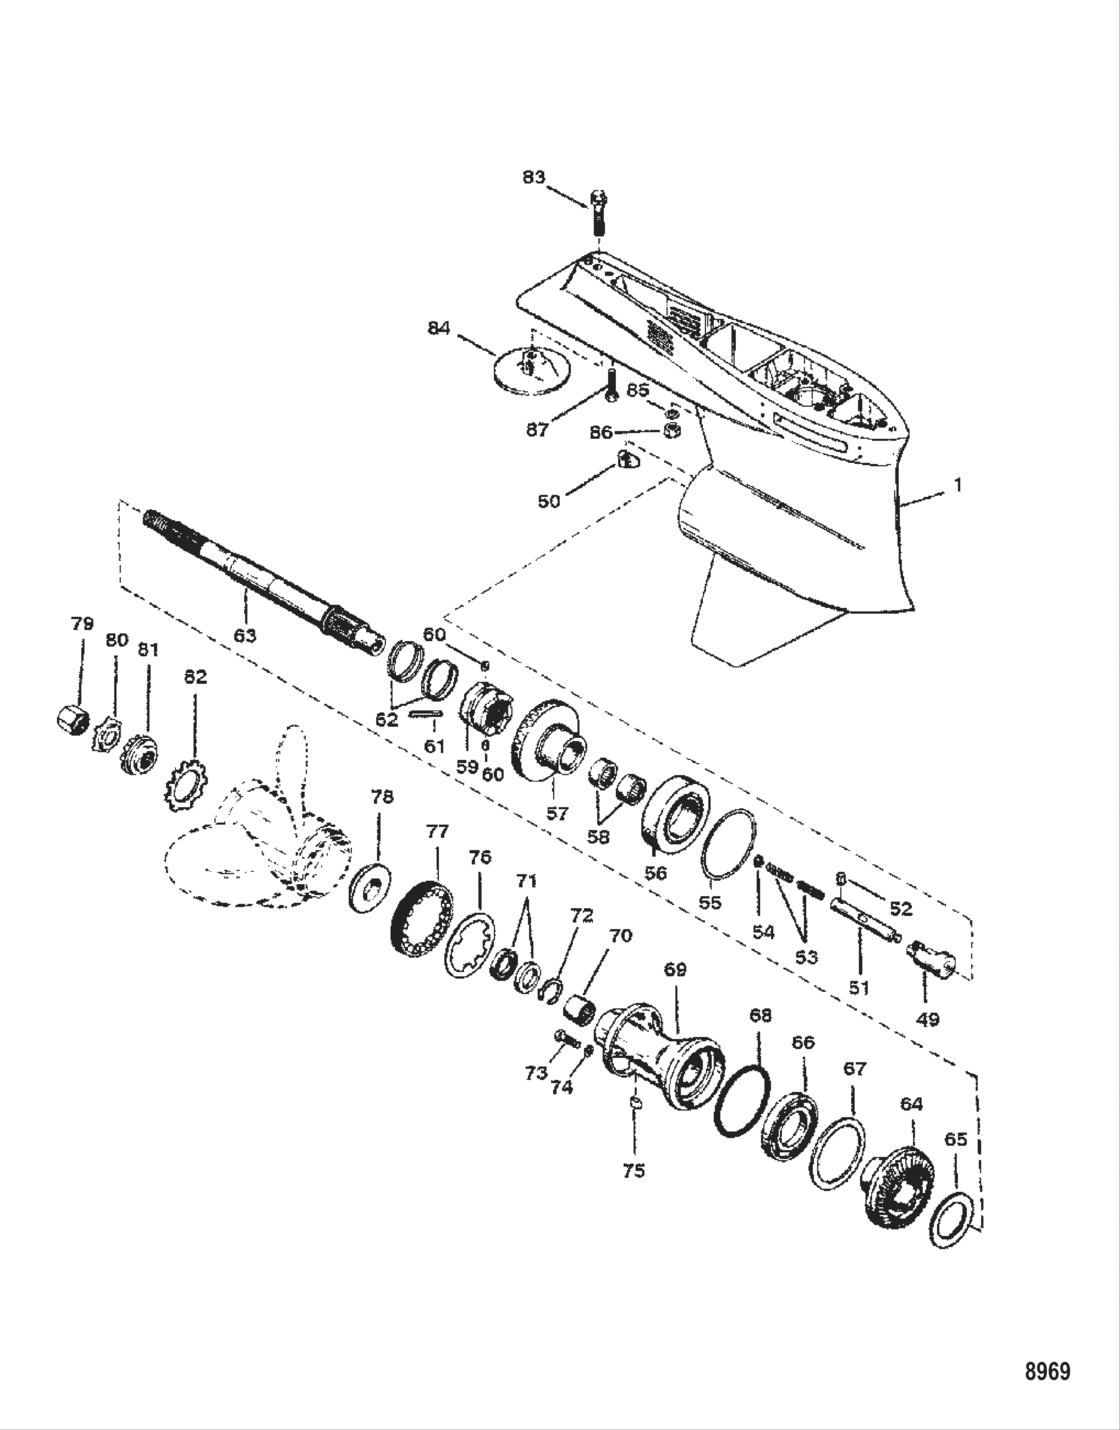 Gear Housing Propeller Shaft - Cle-1.87:1/2:1 Gear Ratio